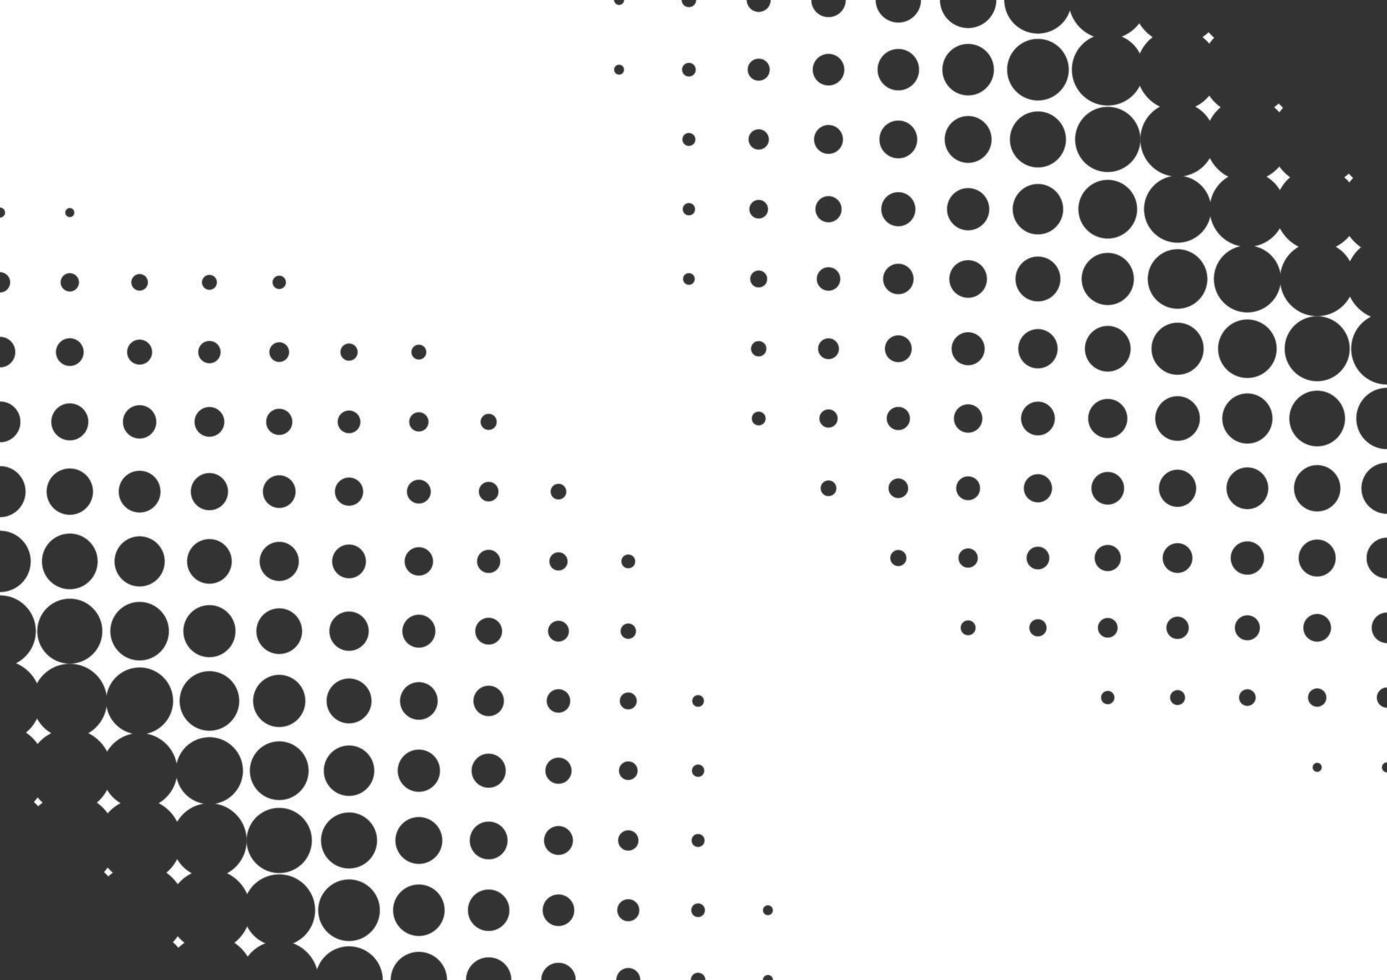 fundo abstrato de meio-tom de pontos preto e branco vetor